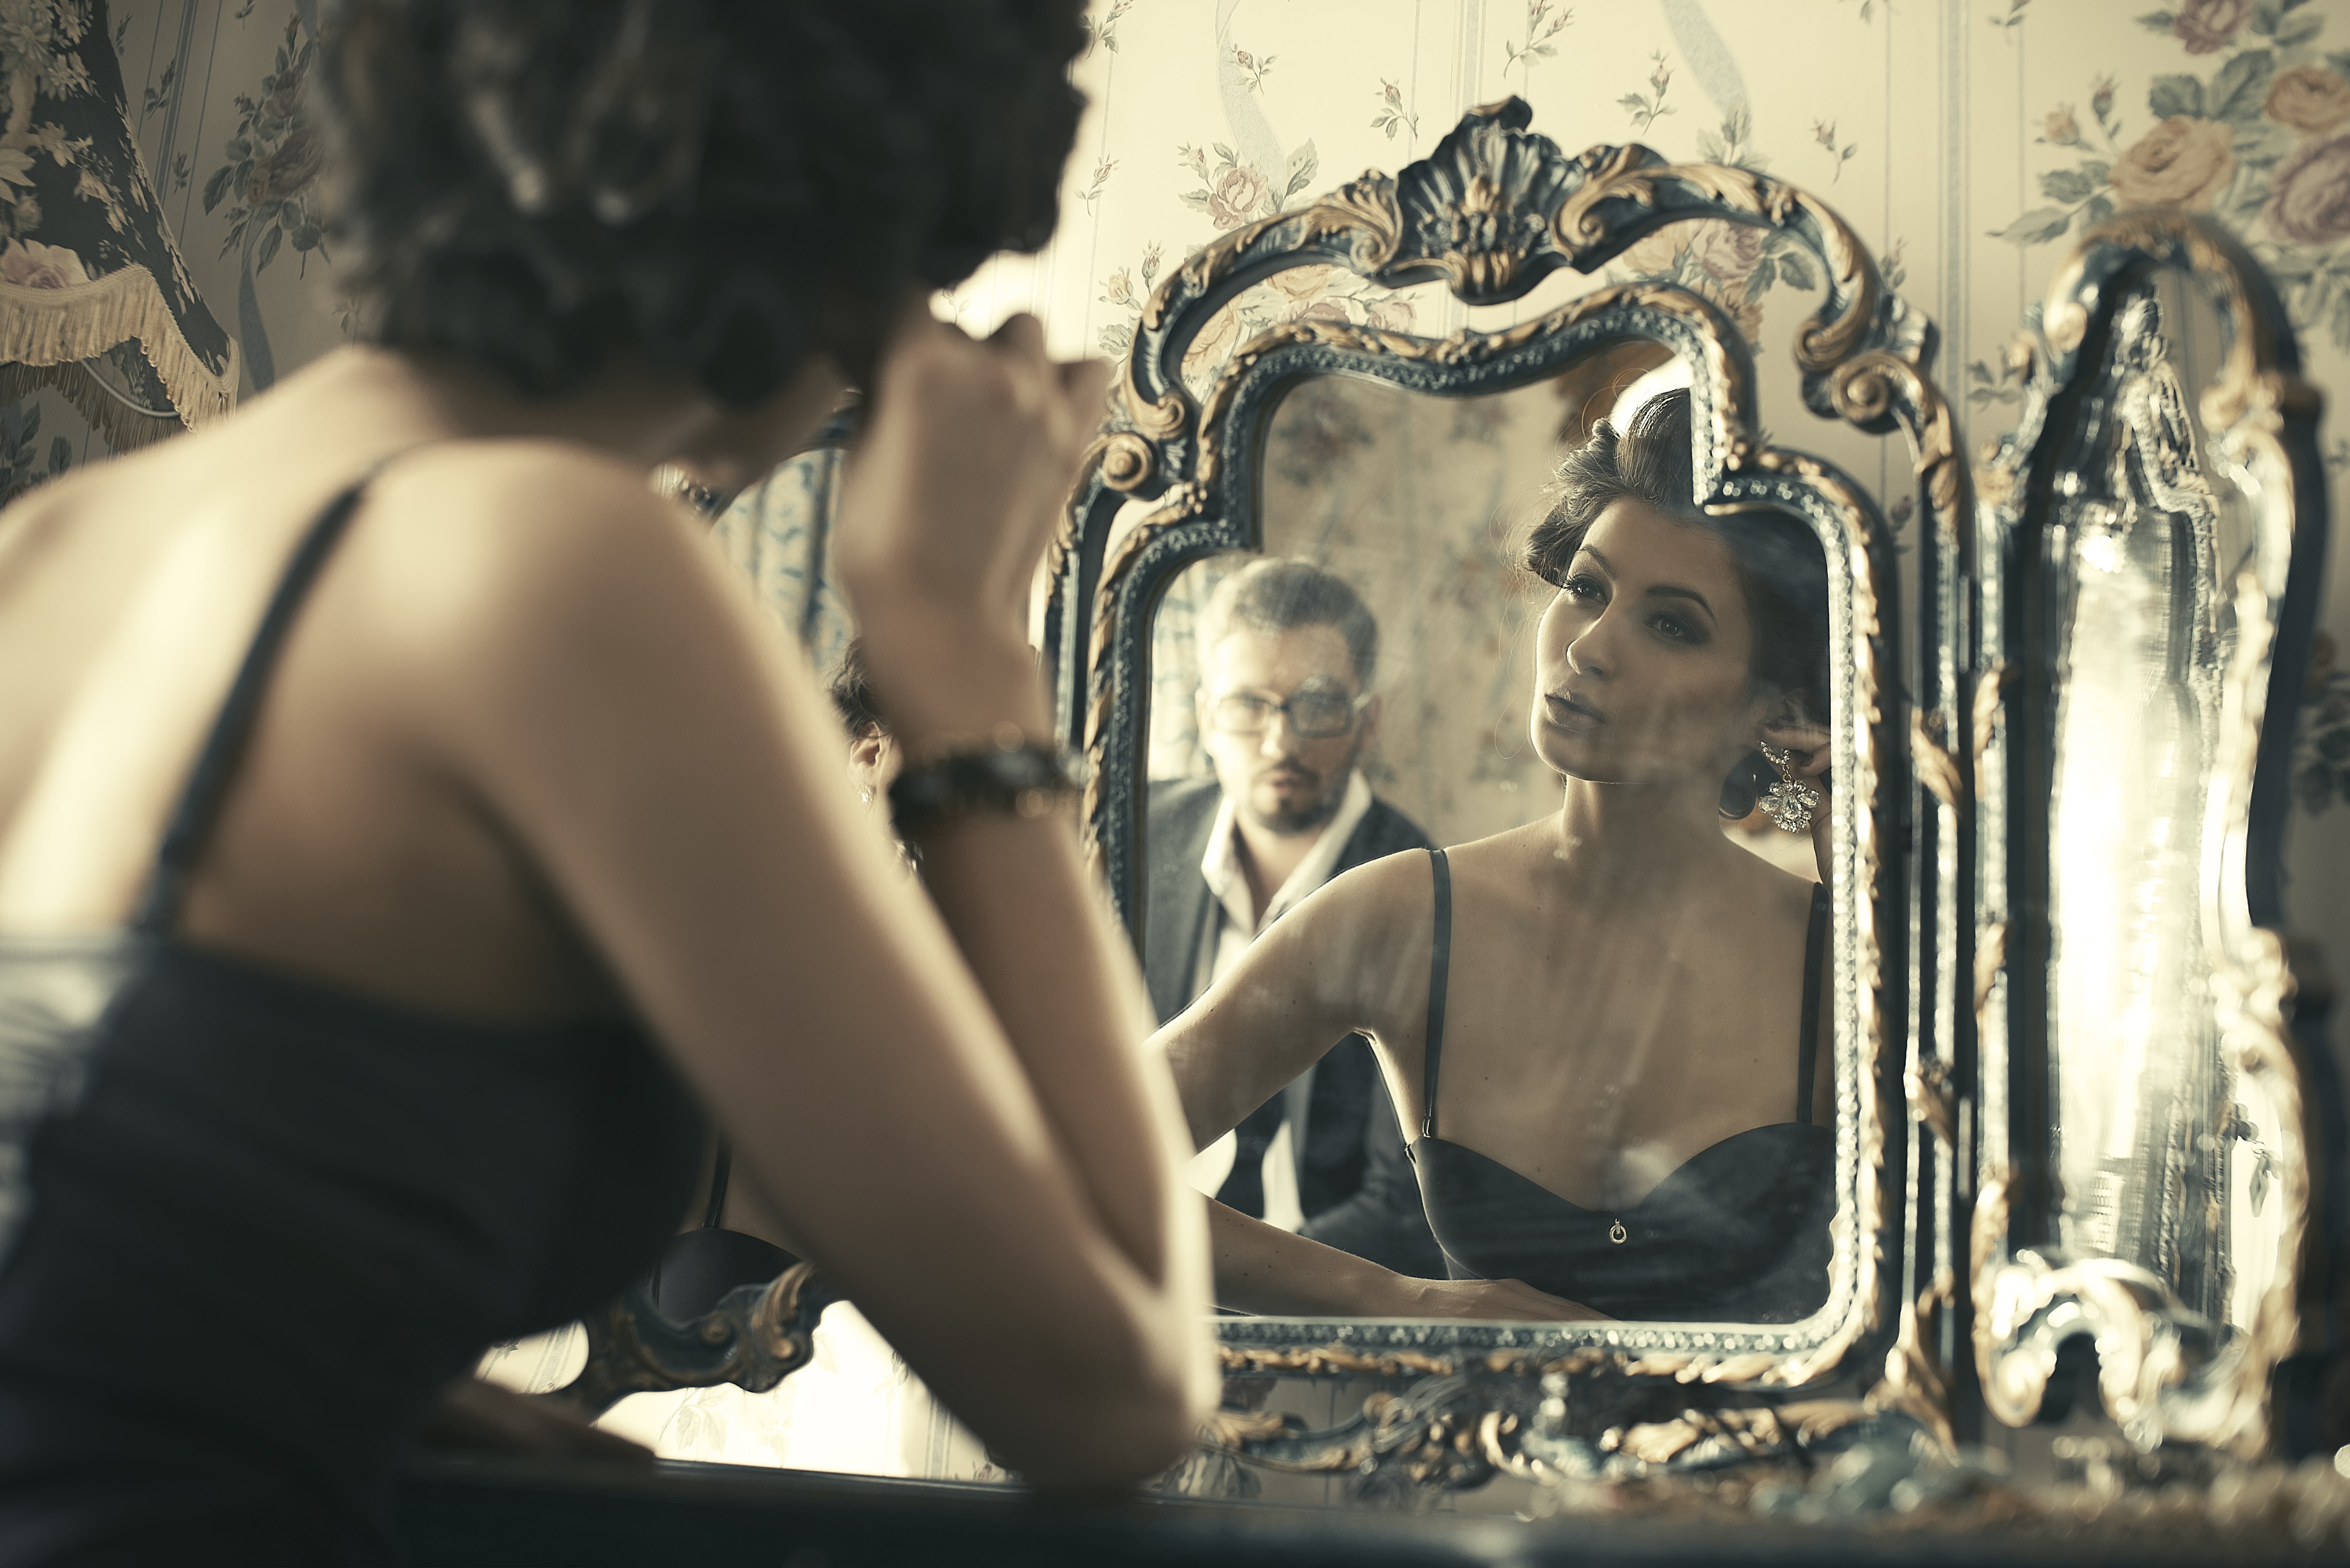 Сучки красуются оголенным отражением в зеркале